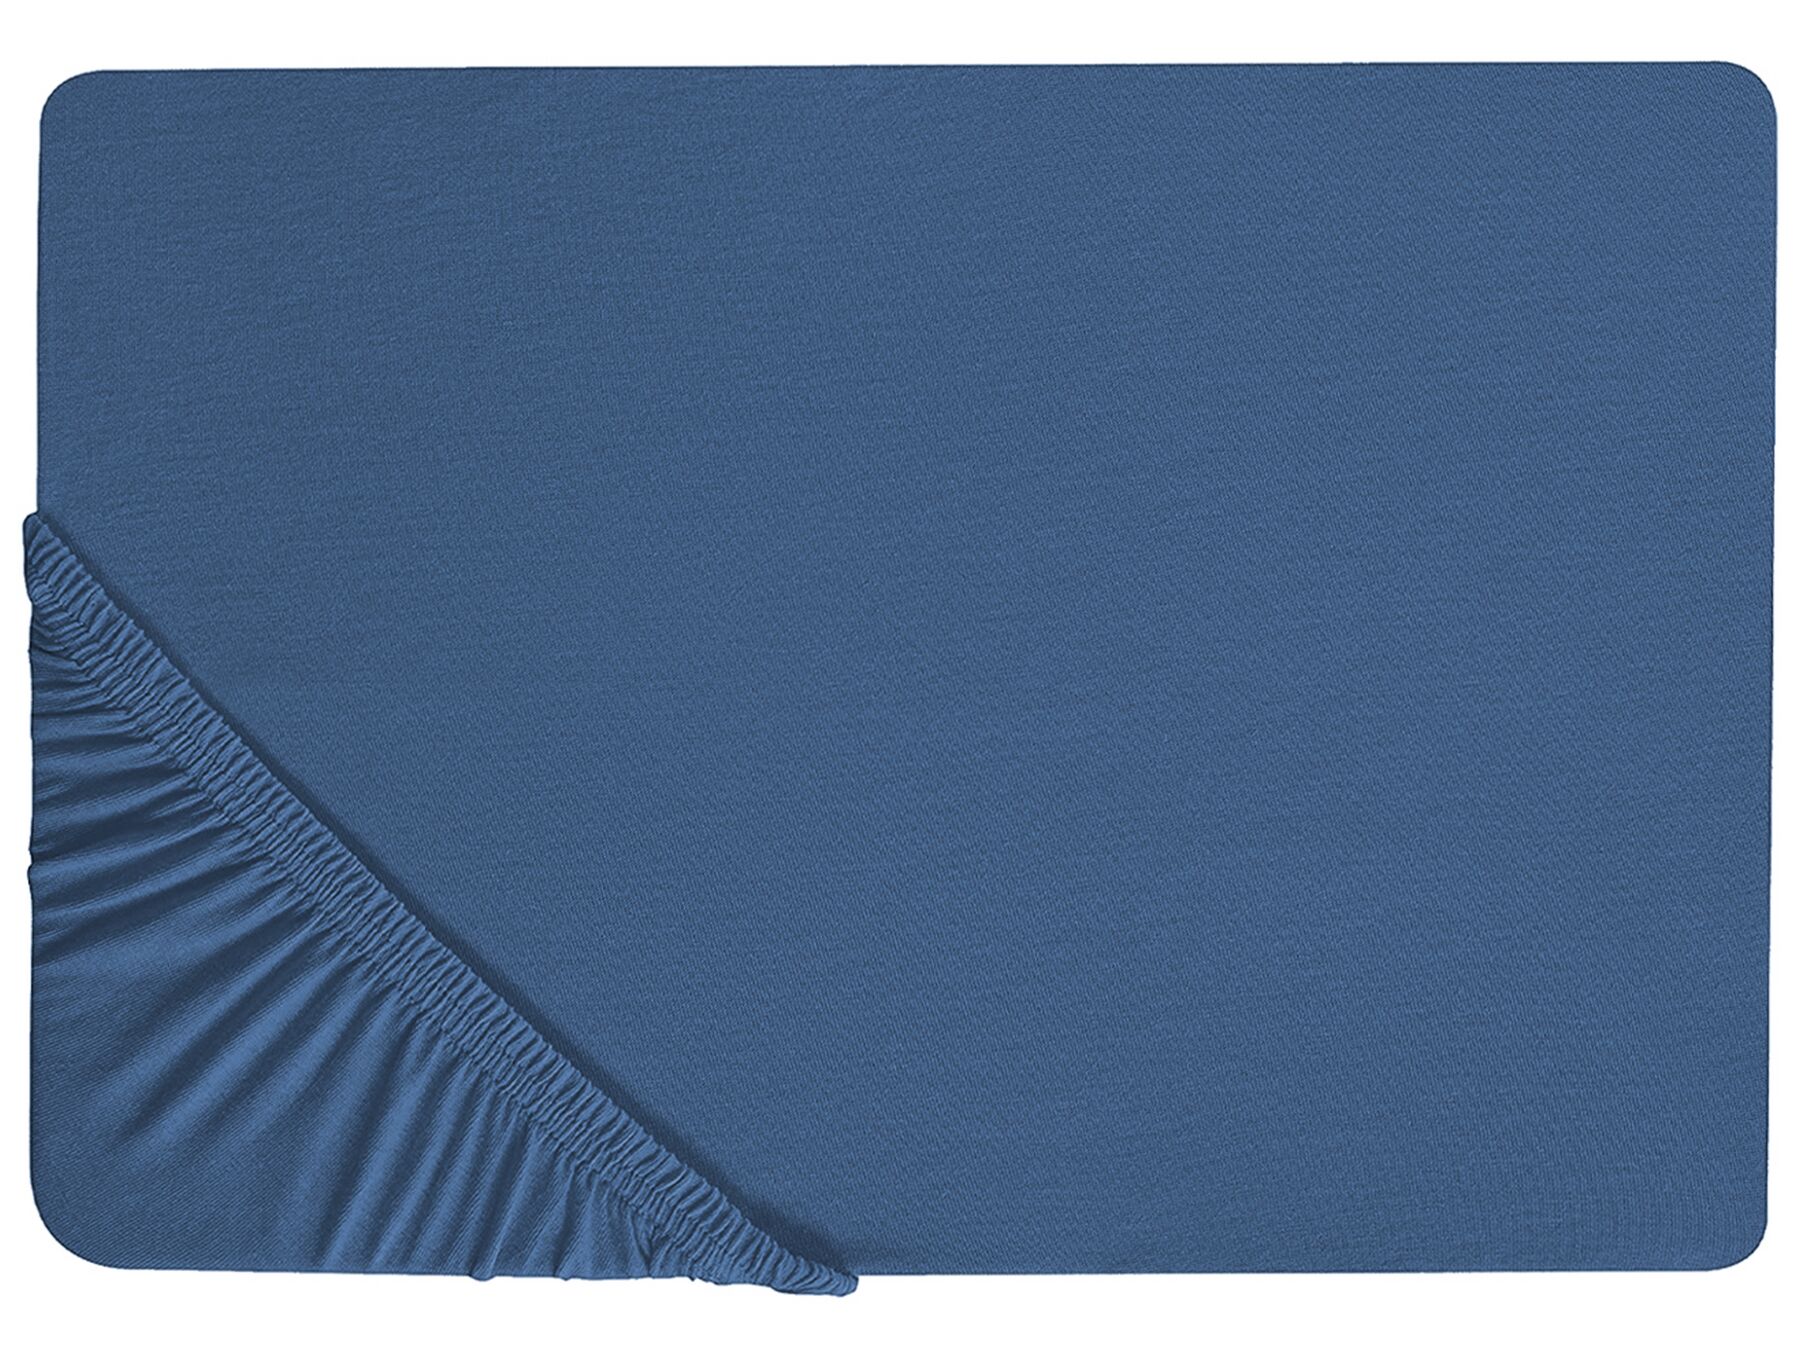 Hoeslaken katoen marineblauw 180 x 200 cm JANBU_845227